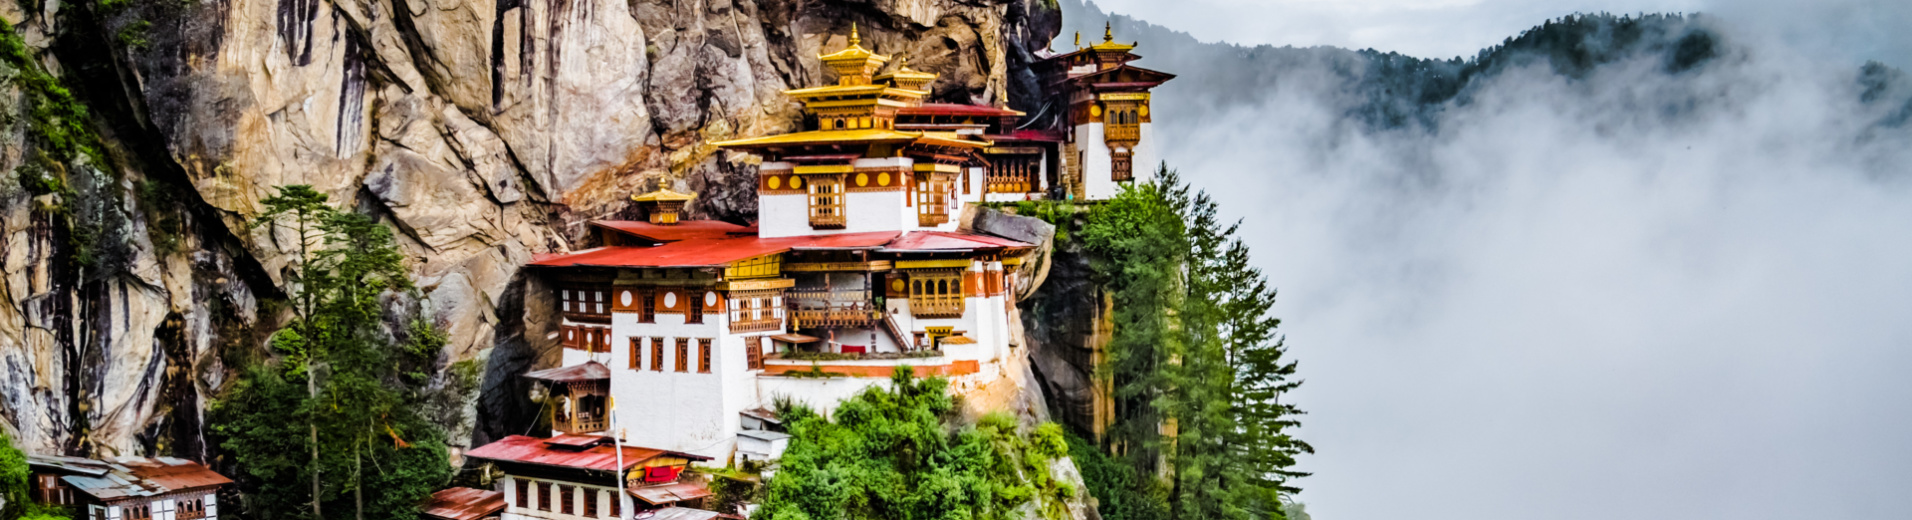 dochoula-pass-bhoutan